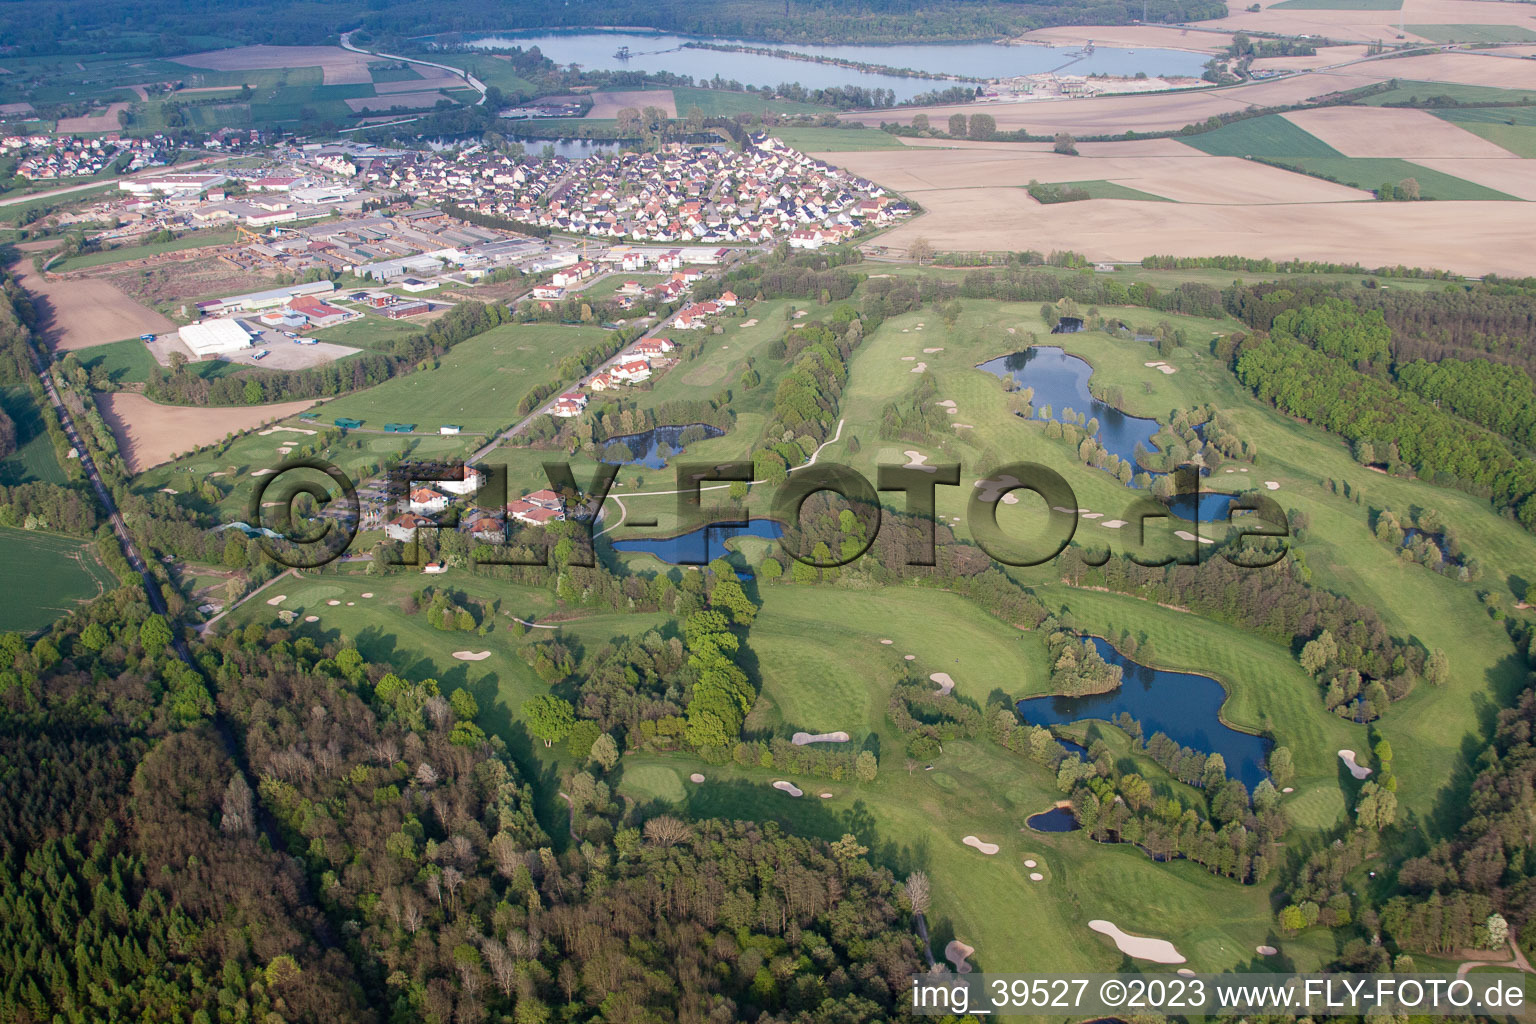 Drone image of Golf club Soufflenheim Baden-Baden in Soufflenheim in the state Bas-Rhin, France